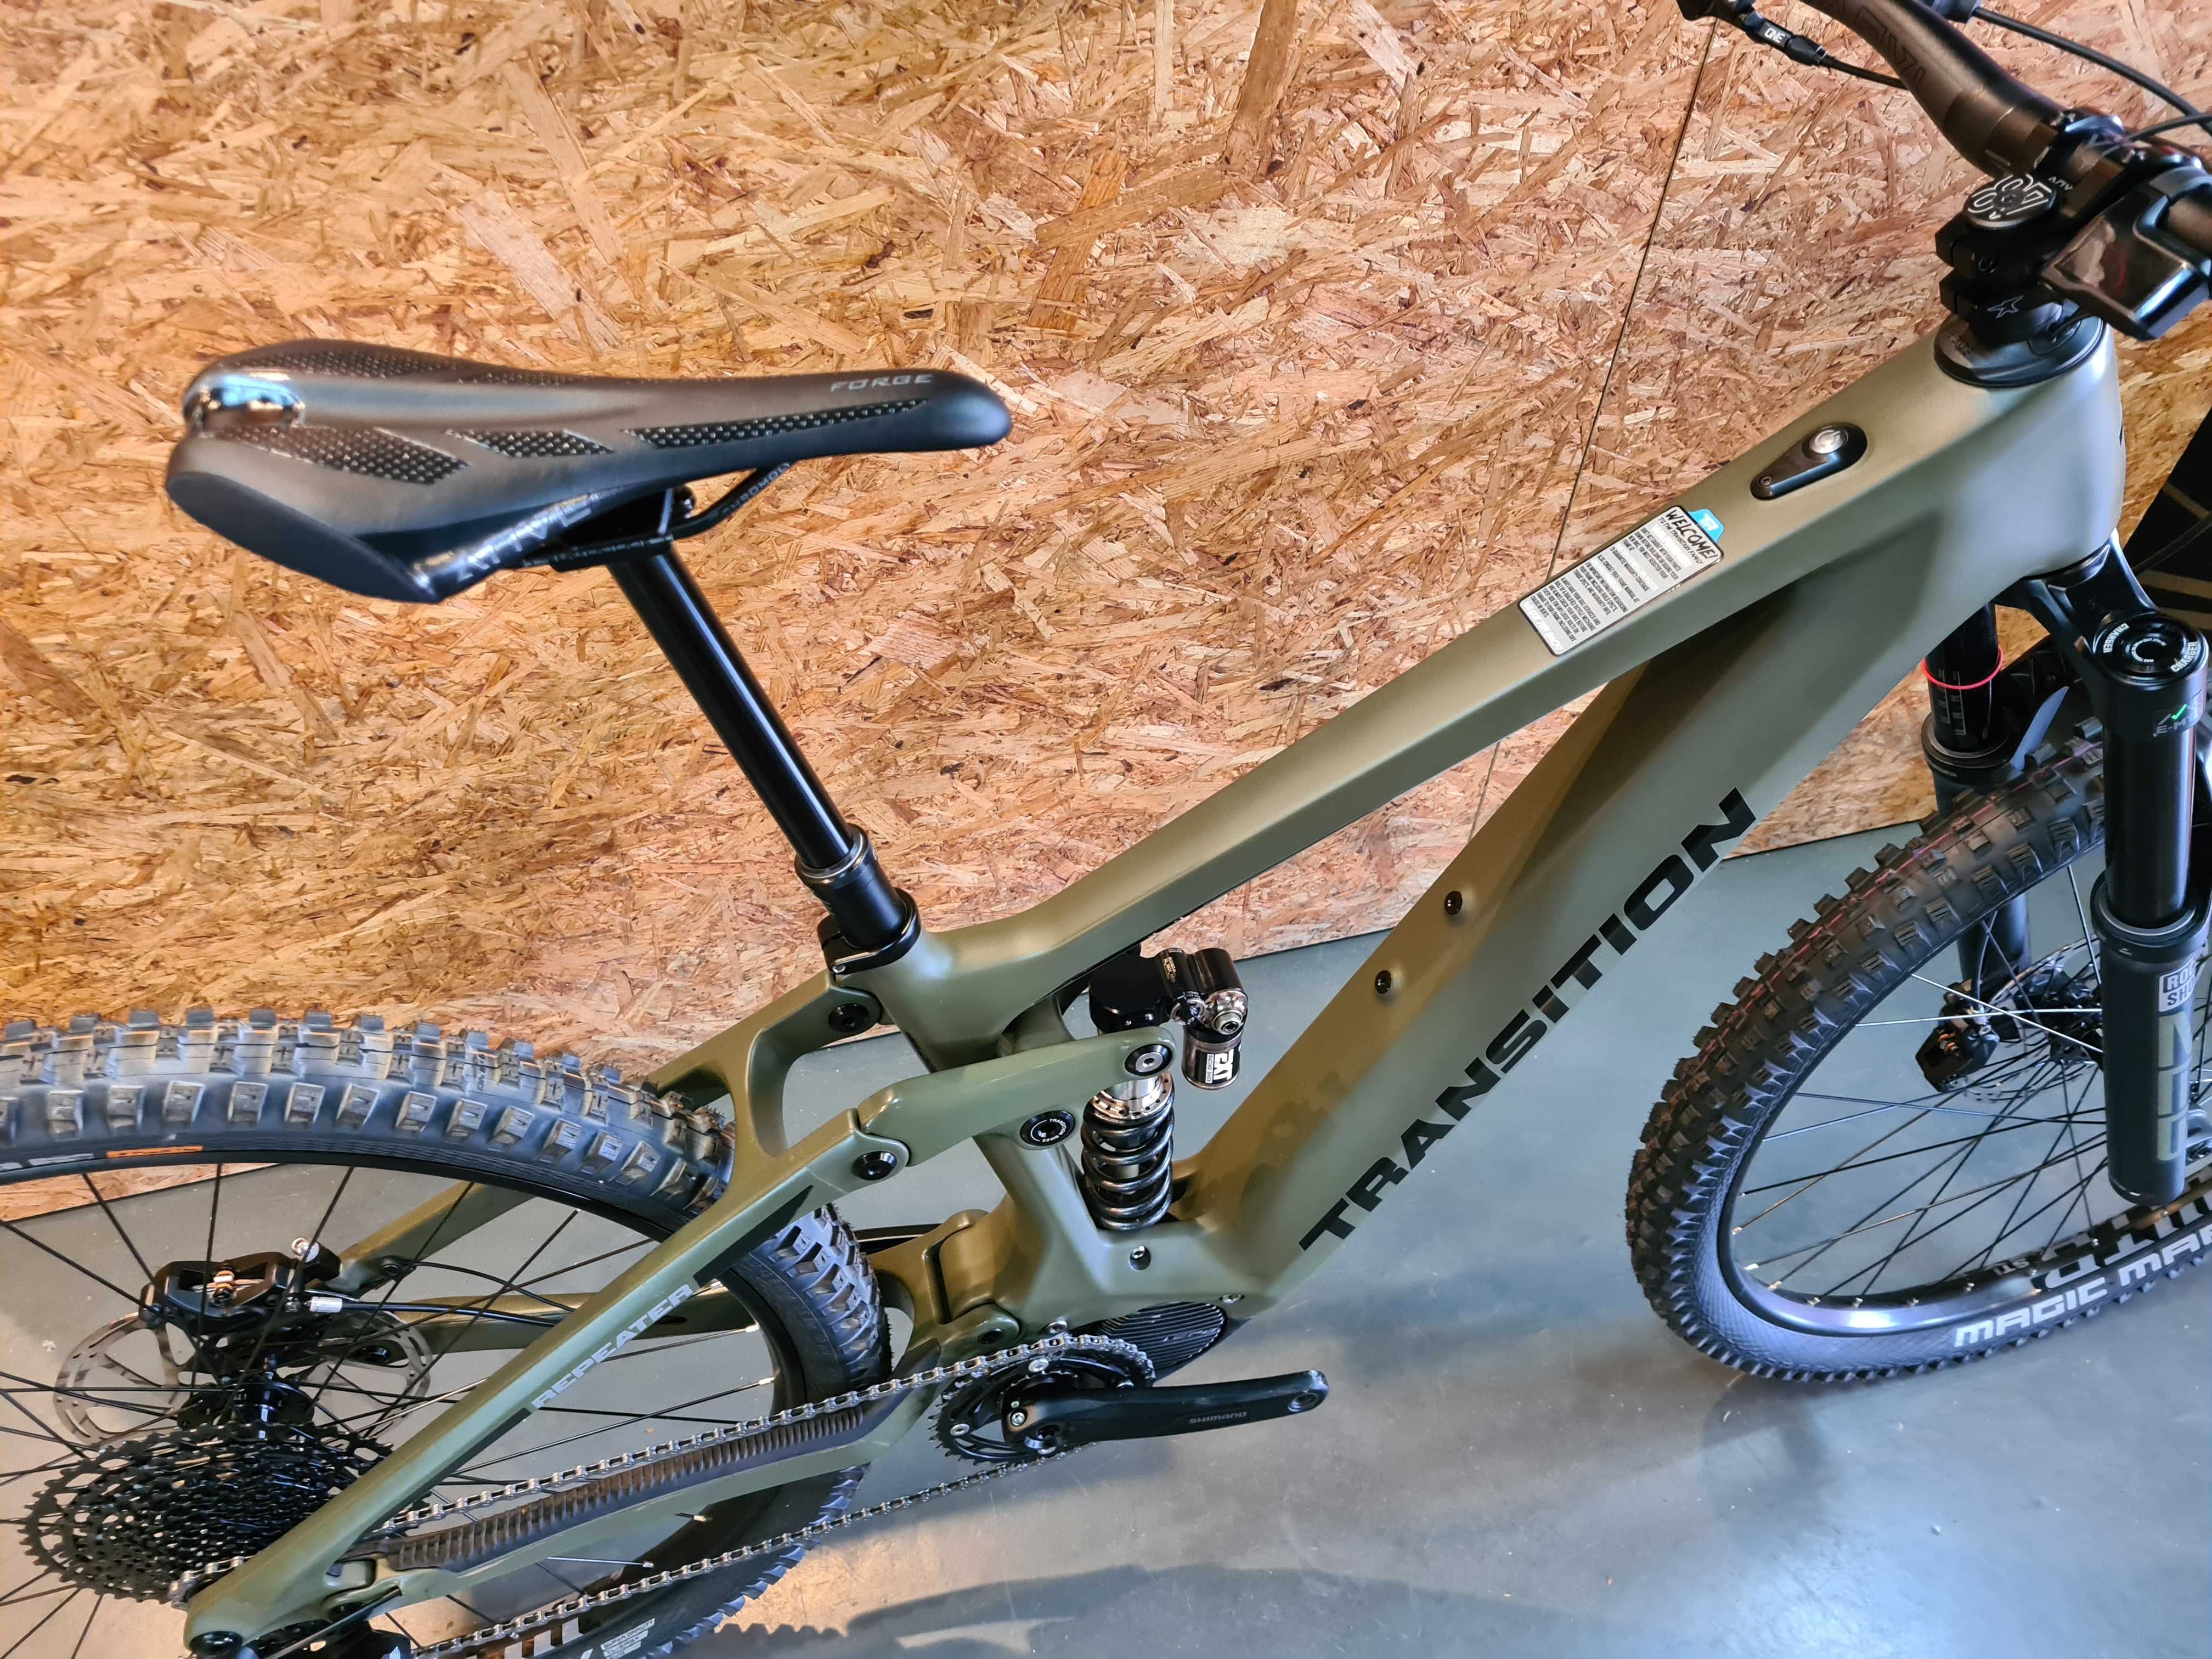 Bicicleta Enduro Eléctrica e-bike TRANSITION Repeater NX (como nova)